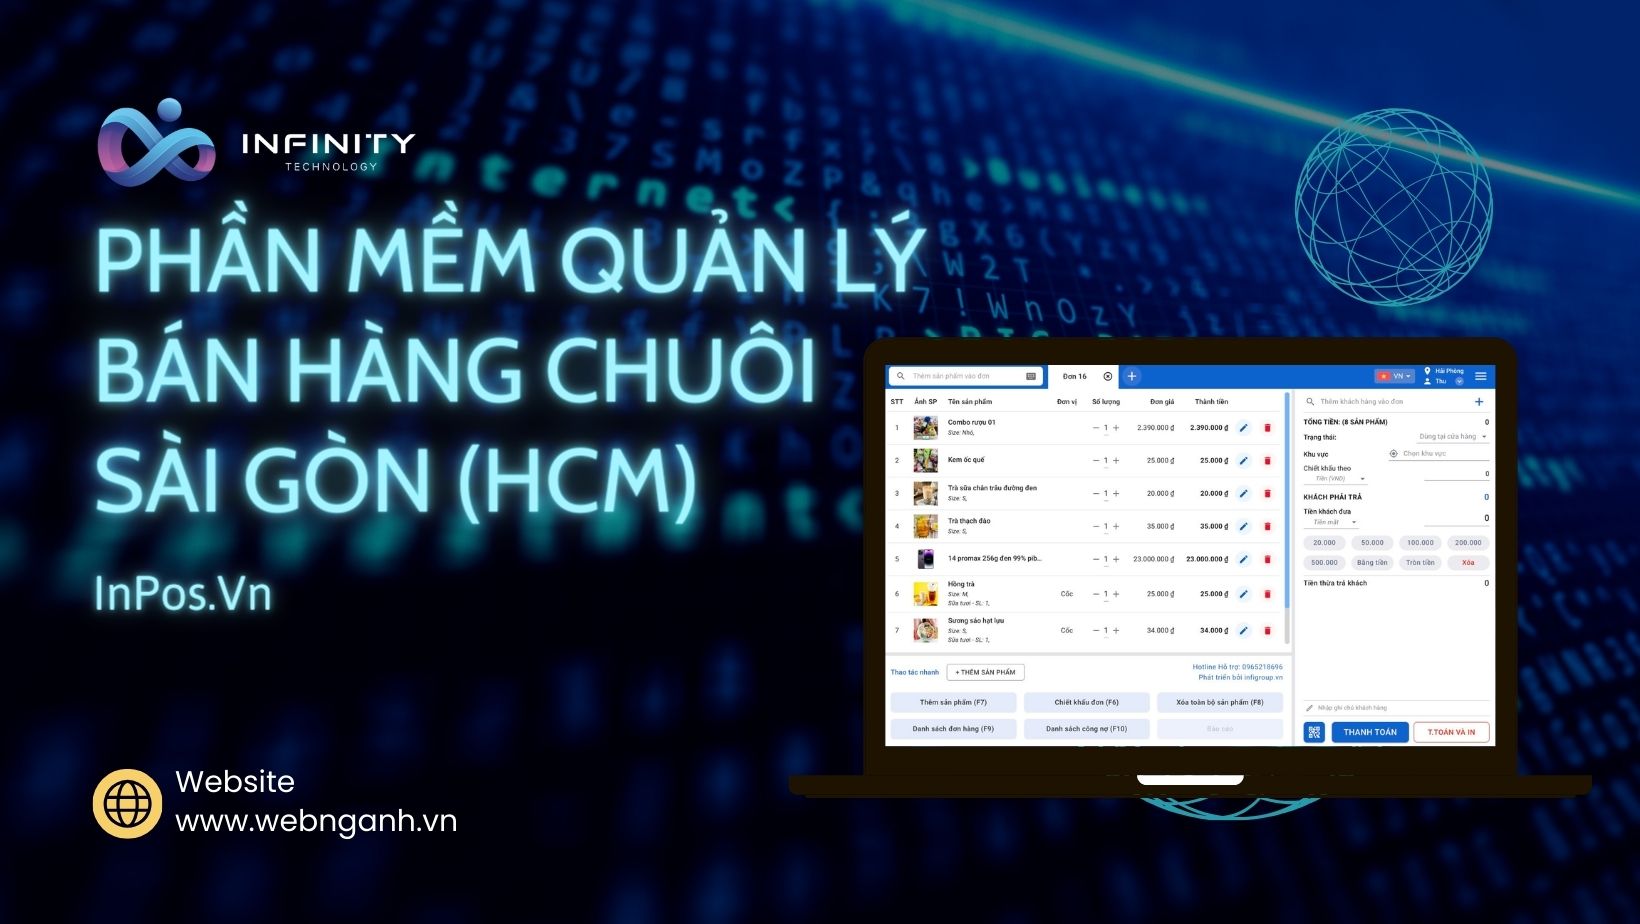 Phần mềm quản lý bán hàng chuỗi Sài Gòn ( HCM ) – inPos